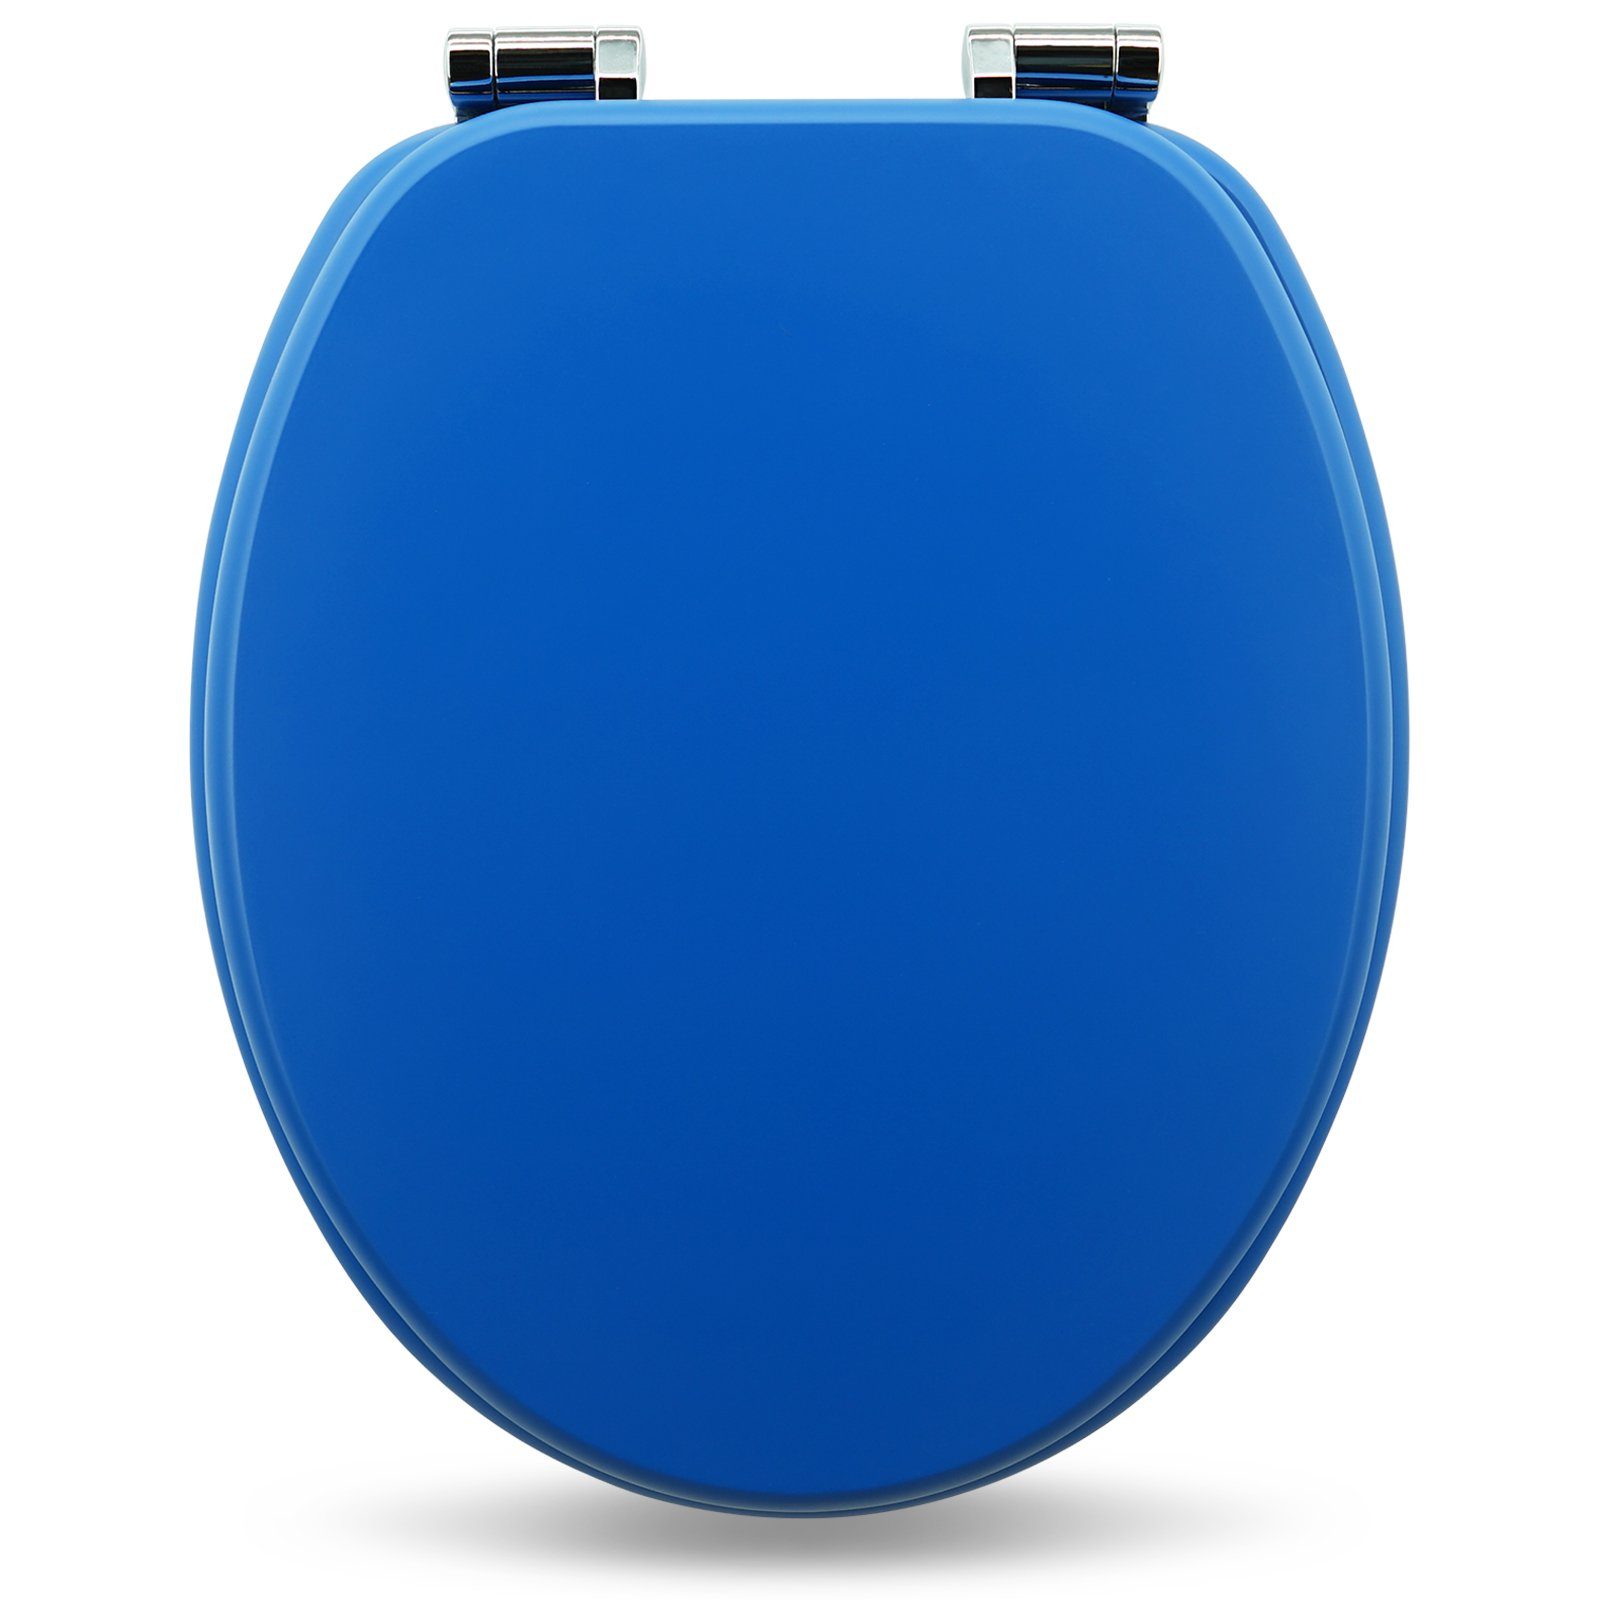 Sanfino WC-Sitz "Blau" Premium Toilettendeckel mit Absenkautomatik aus  Holz, in Blau, hohem Sitzkomfort, einfache Montage